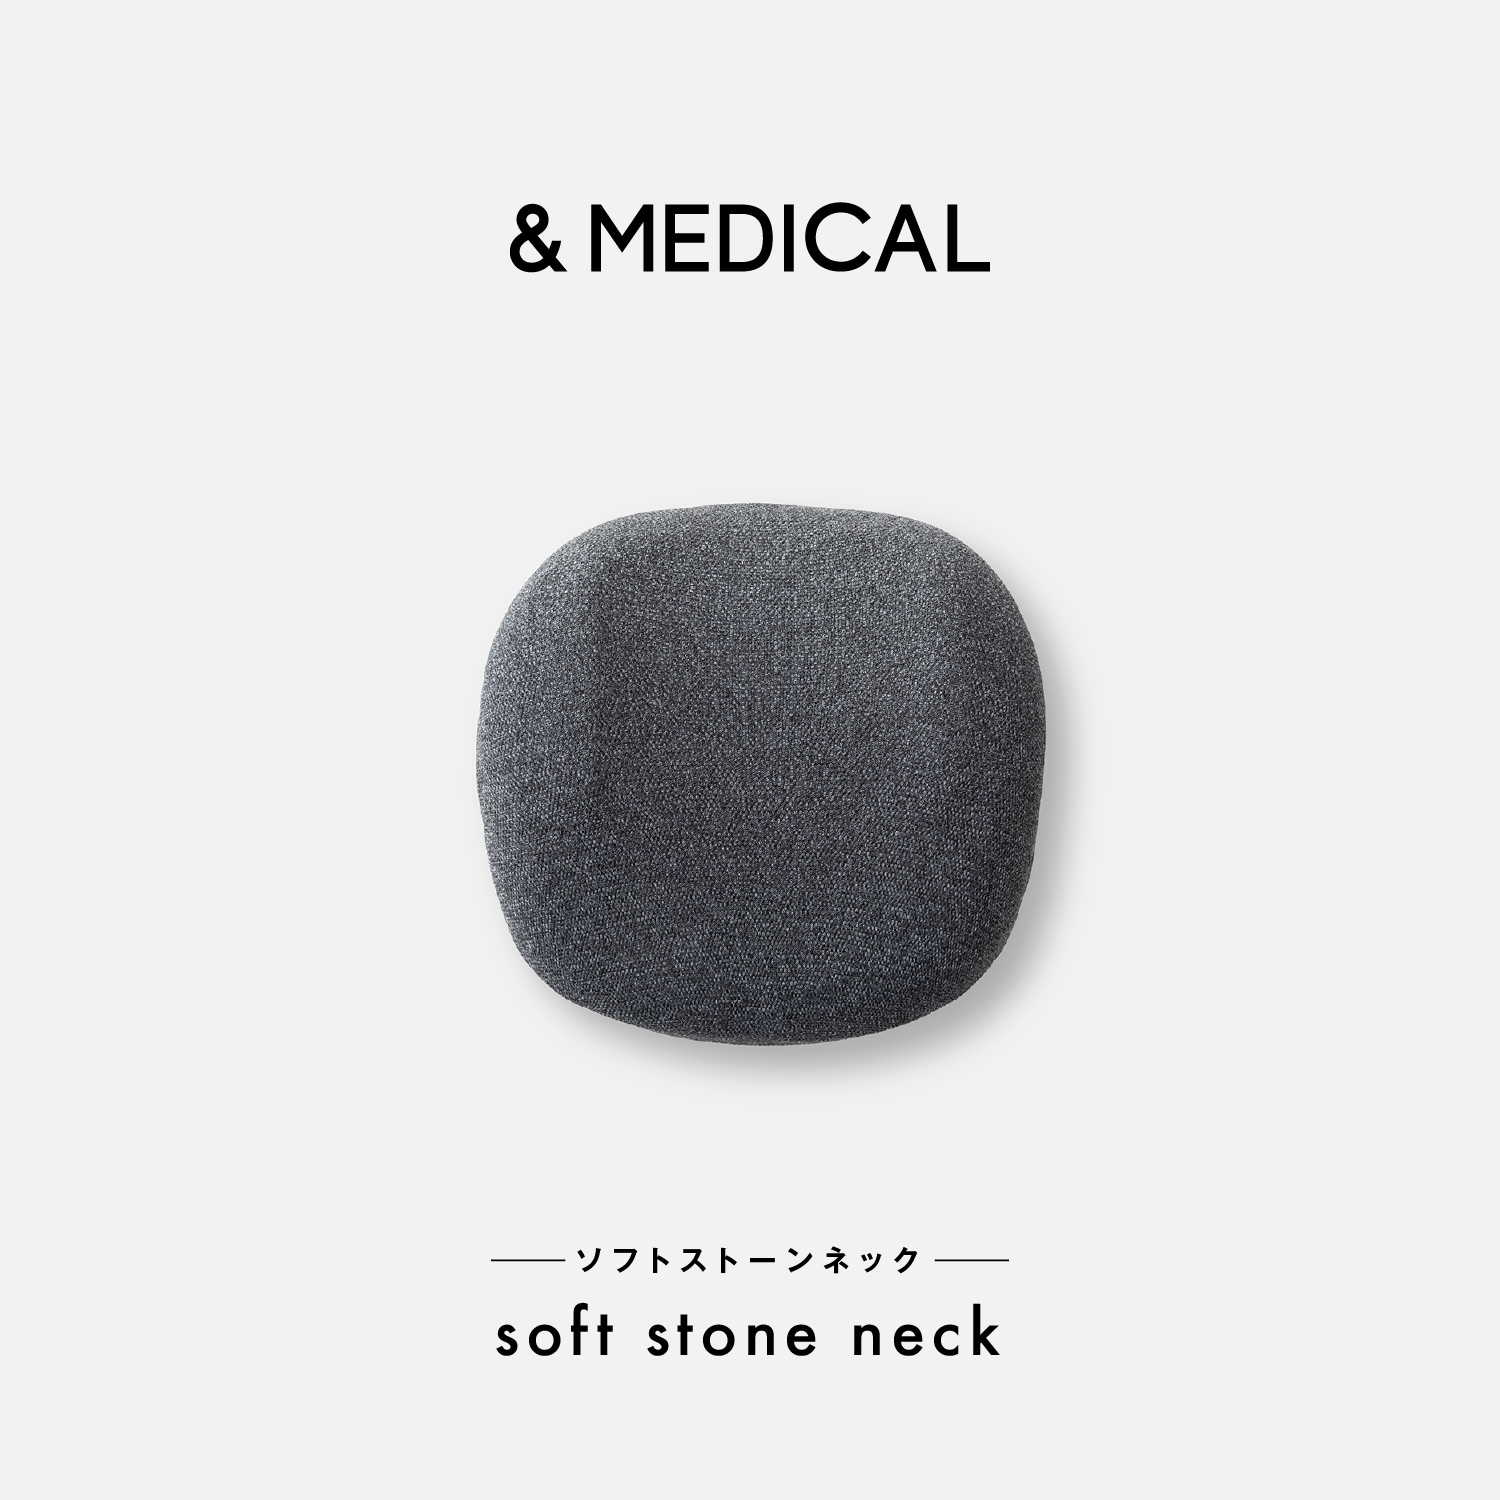 電動マッサージャー「soft stone neck」【首用】